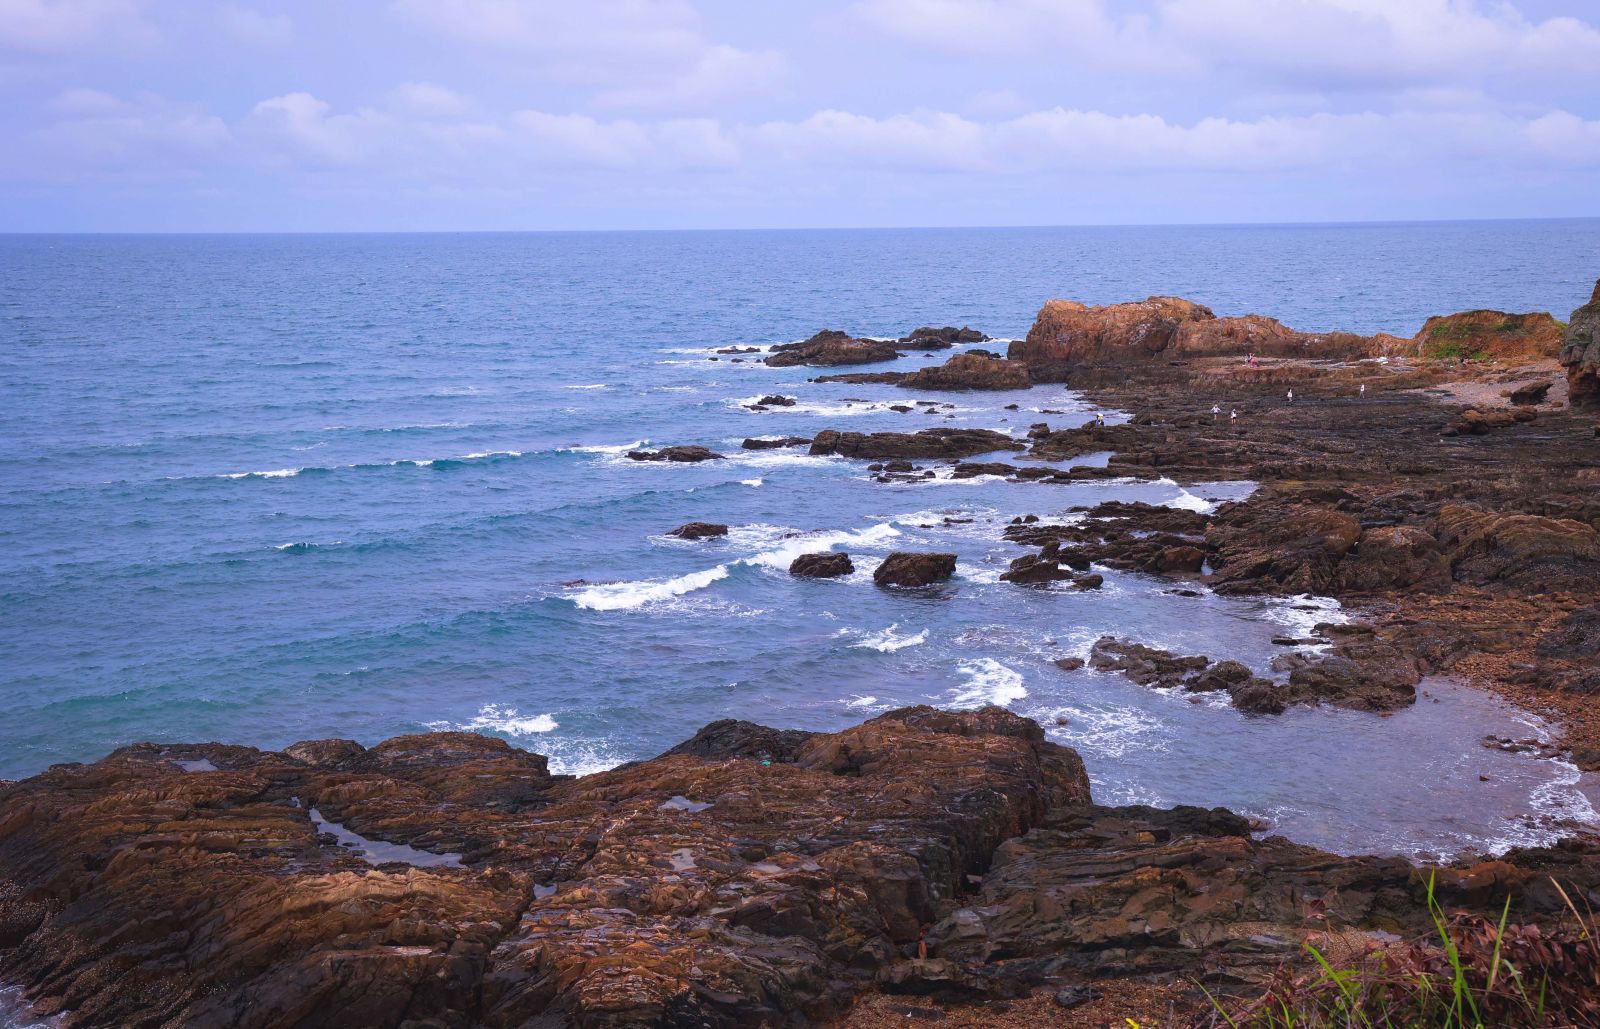 Nhìn từ xa, bãi đá có nhiều mũi đá nhô ra biển…